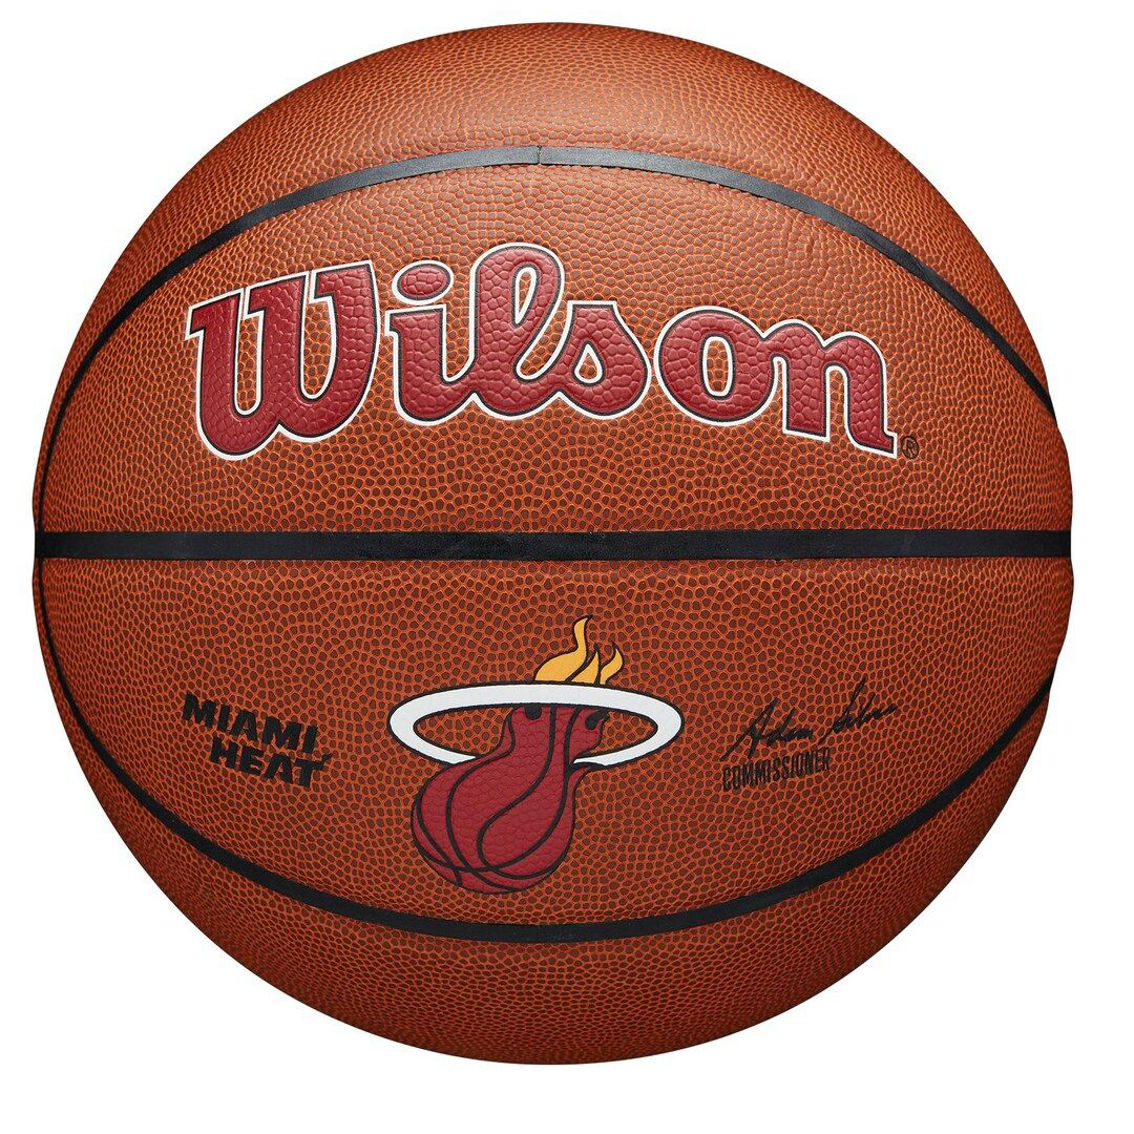 Wilson Miami Heat Wilson NBA Team Alliance Basketball - Image 2 of 4